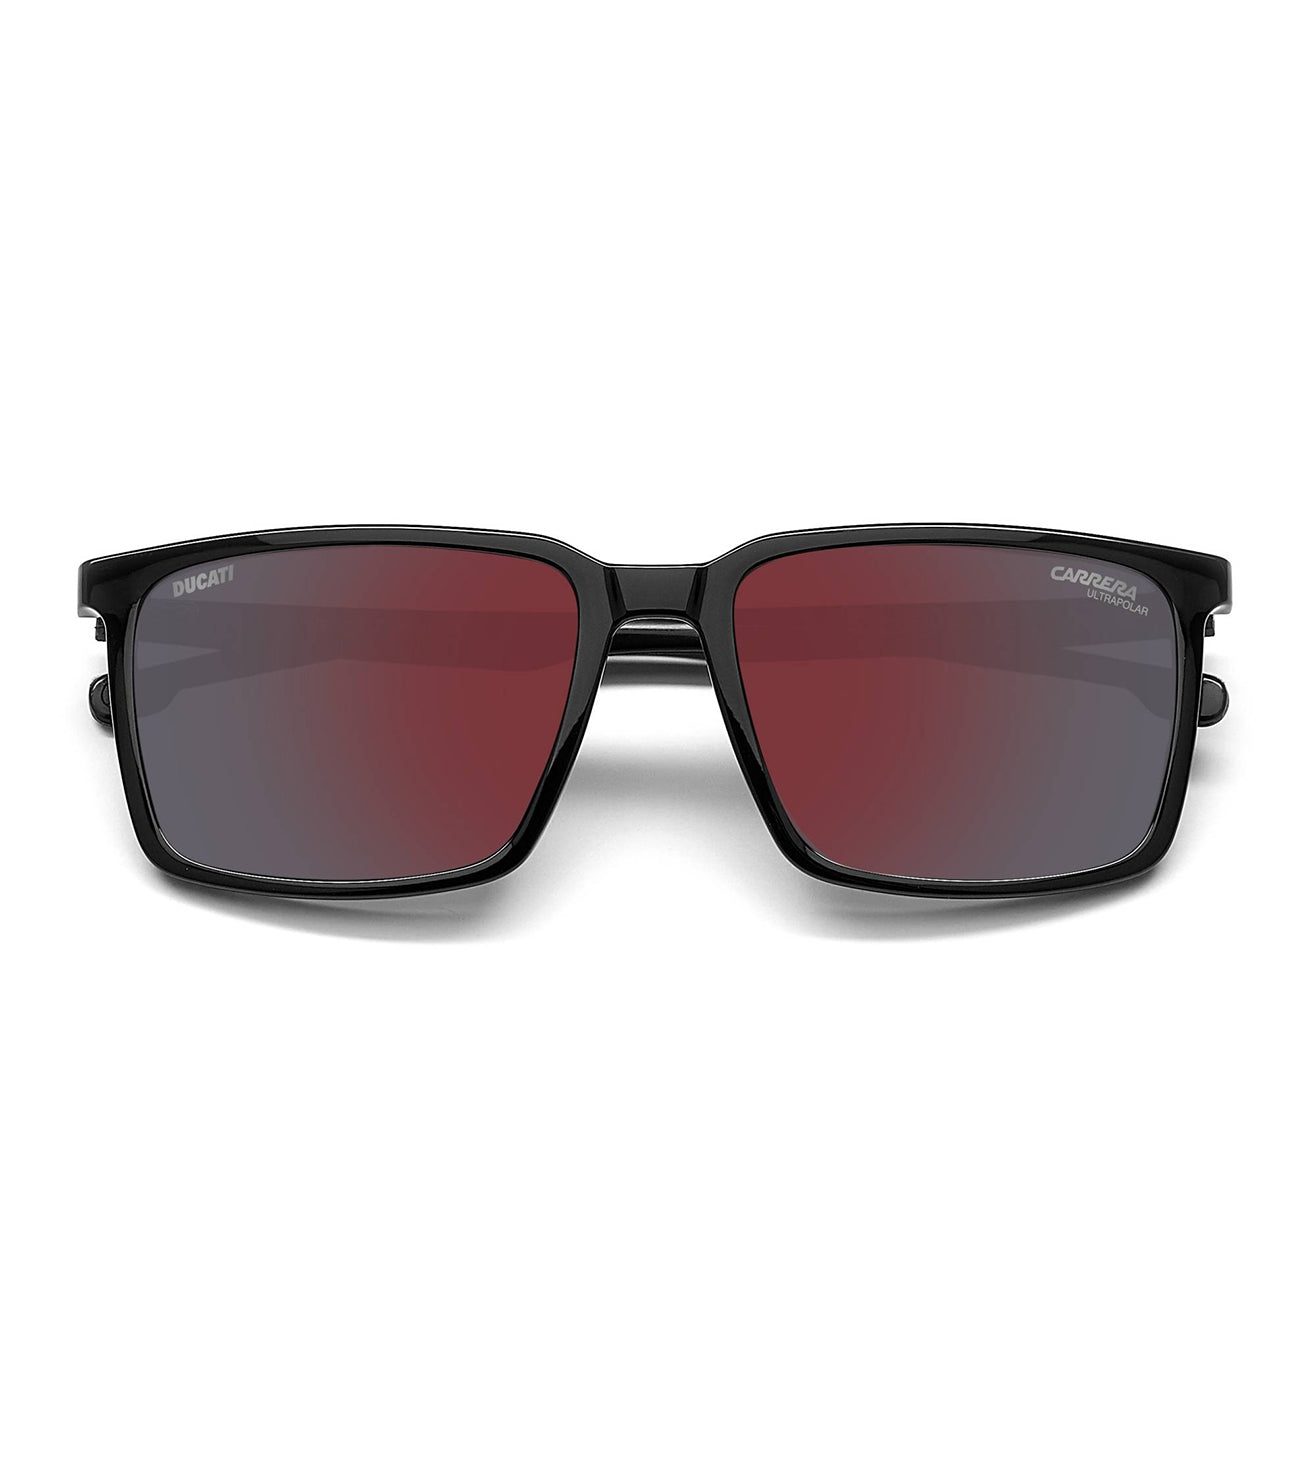 Carrera Men's Red Square Sunglasses